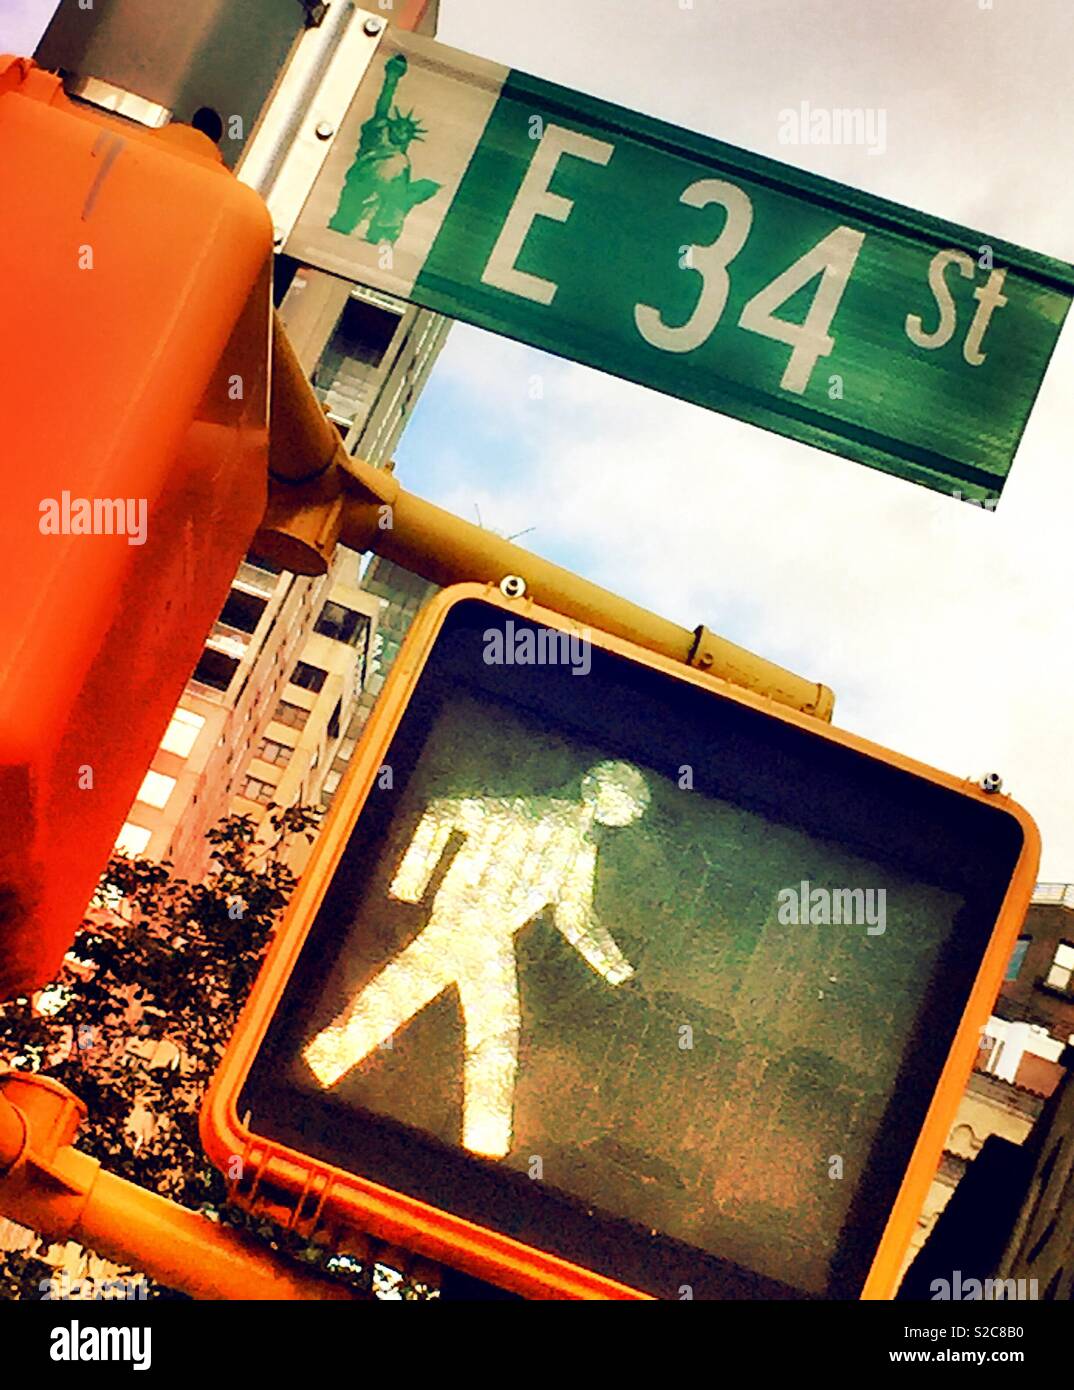 Passeggiata pedonale sul segno E. 34th St., New York City, Stati Uniti d'America Foto Stock